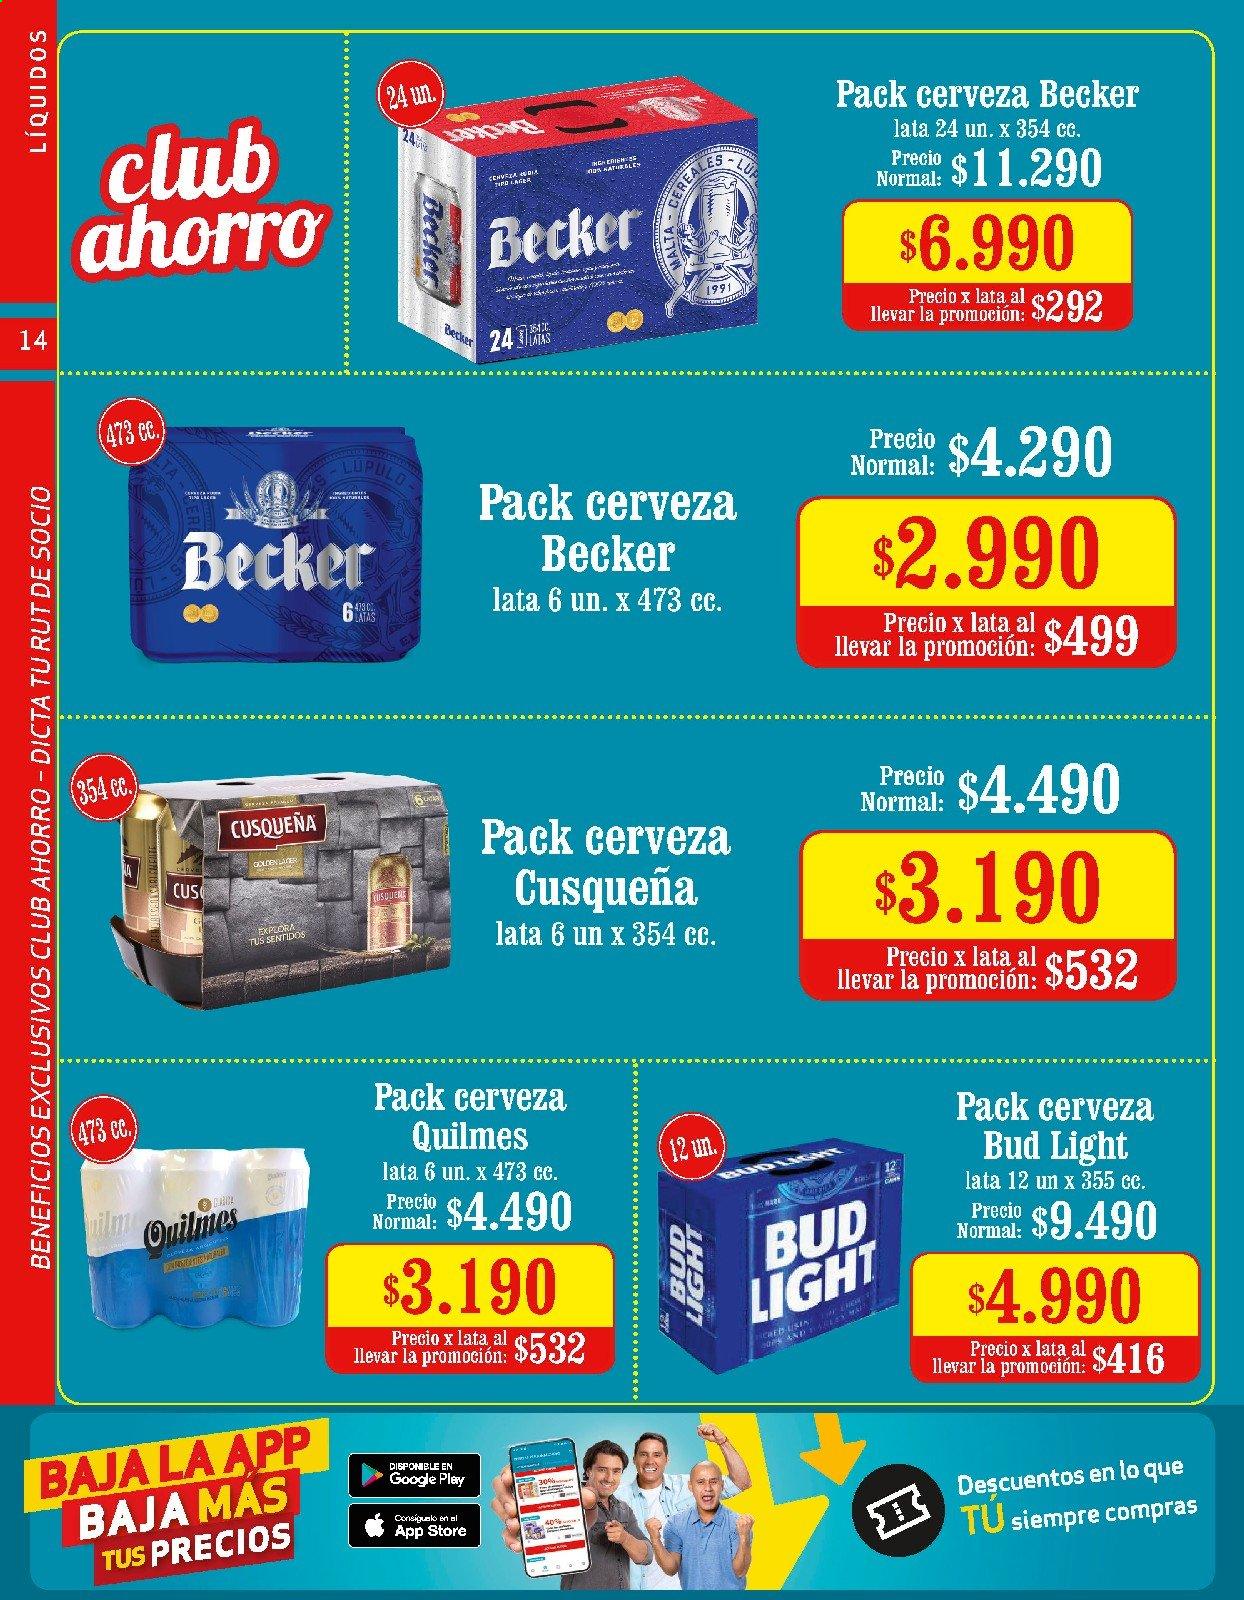 thumbnail - Catálogo Unimarc - 06.01.2021 - 09.02.2021 - Ventas - Quilmes, cerveza, cereales. Página 14.